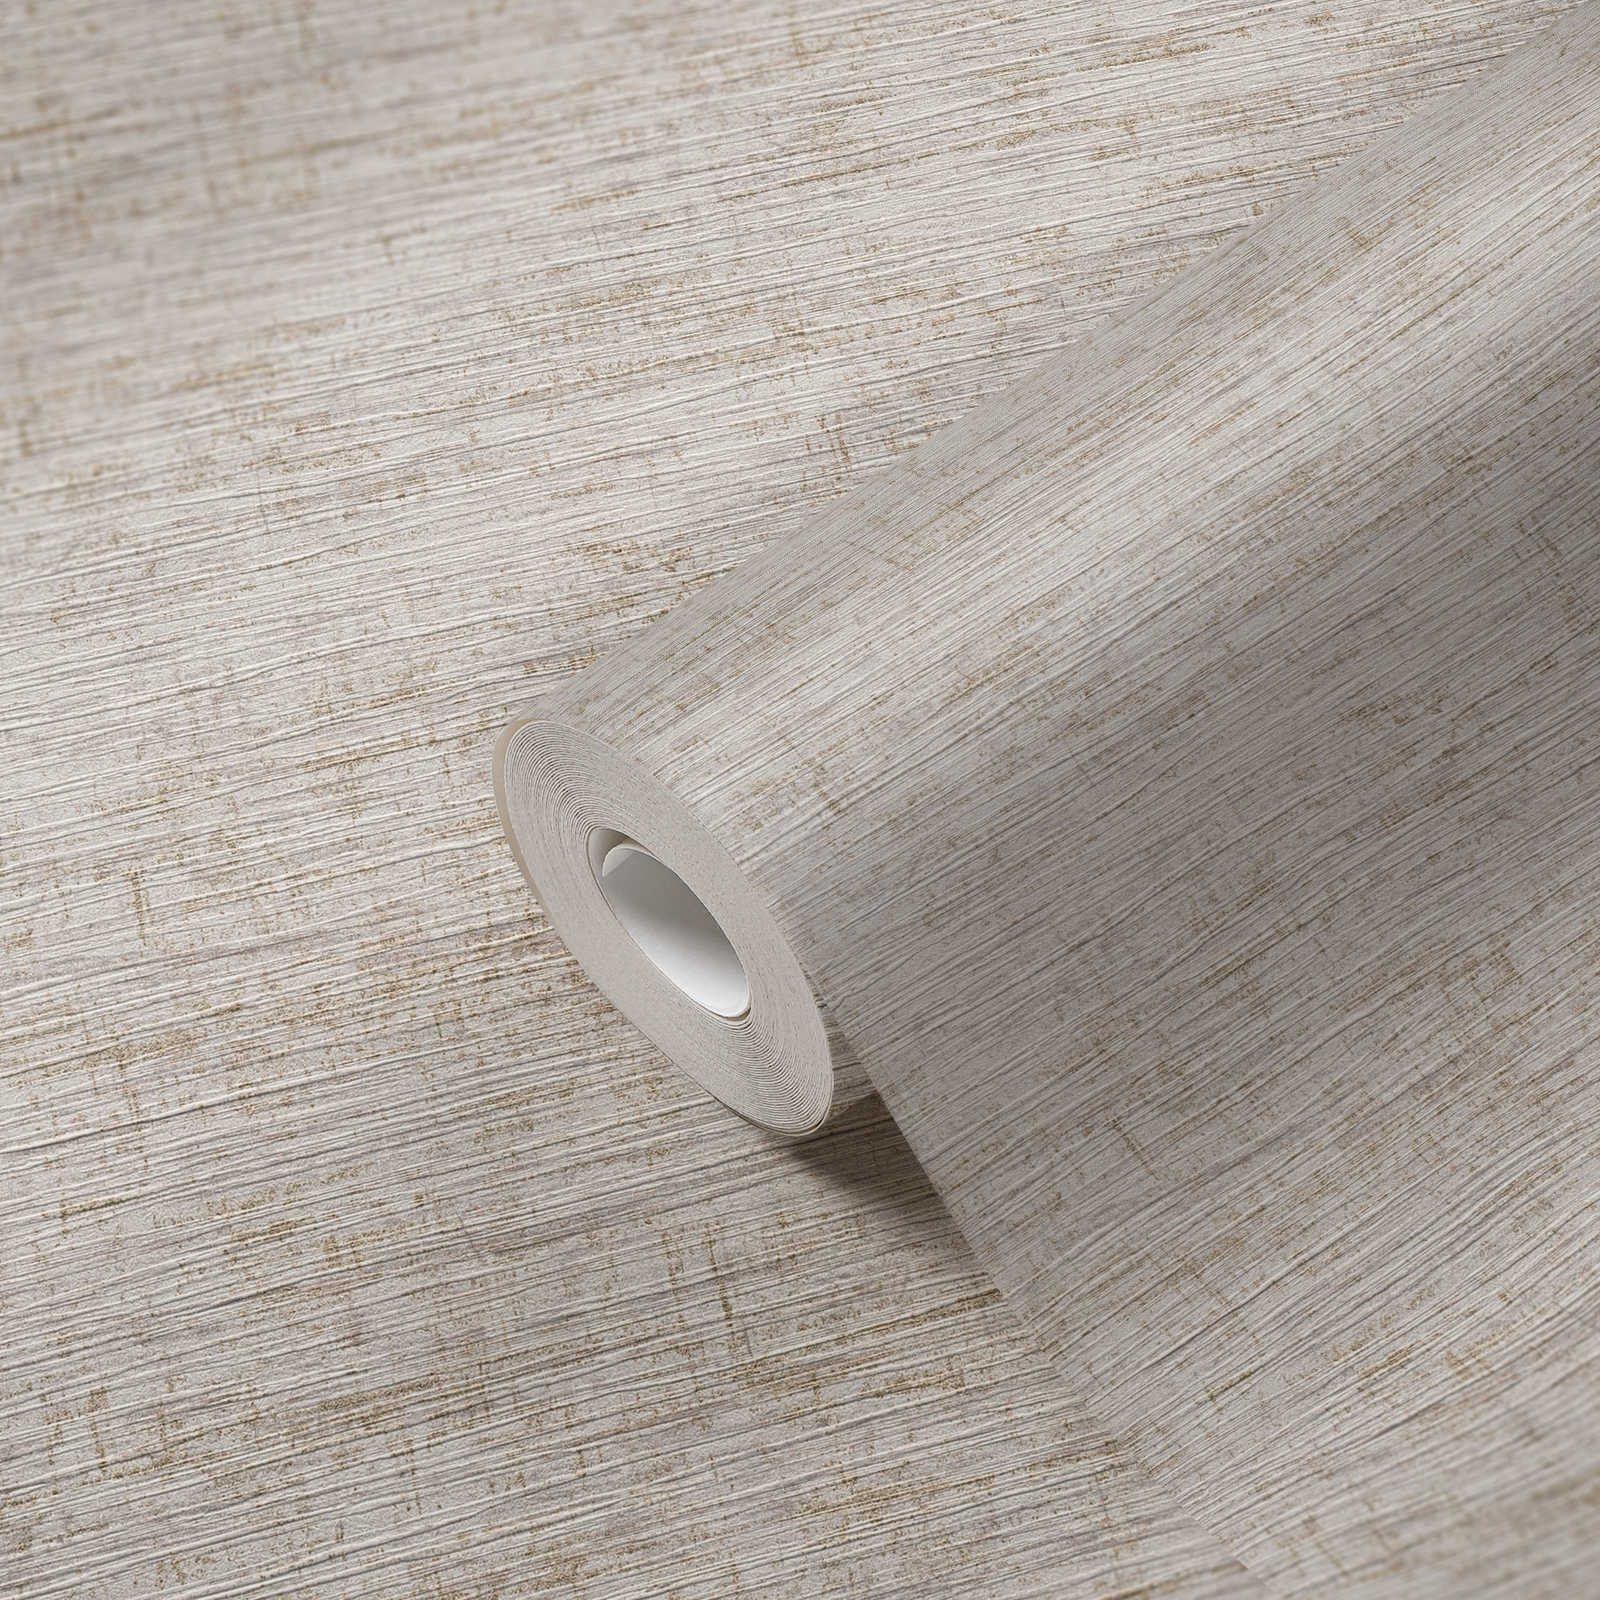             Melierte Tapete mit textilem Prägemuster – Beige, Grau, Metallic
        